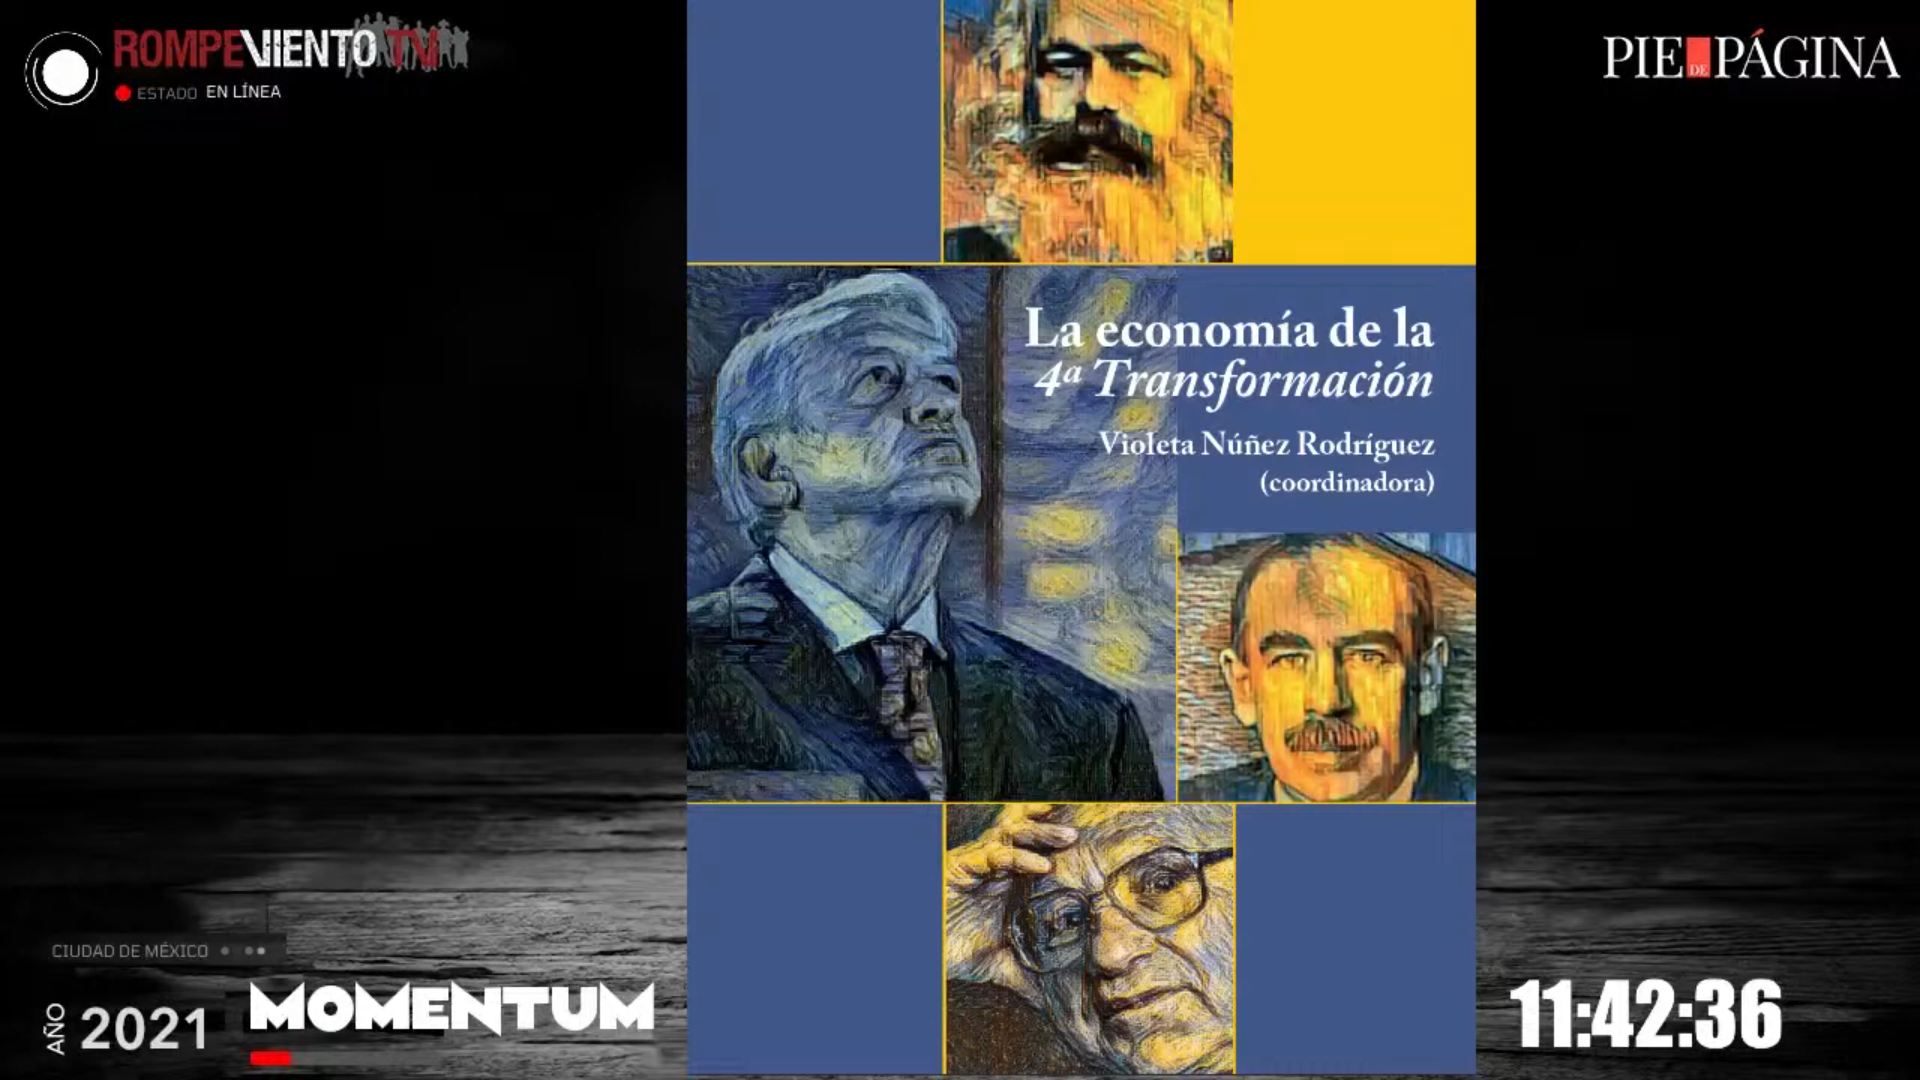 MOMENTUM | ¿Cuál es el modelo económico de la 4T?, libro: la economía de la 4º Transformación